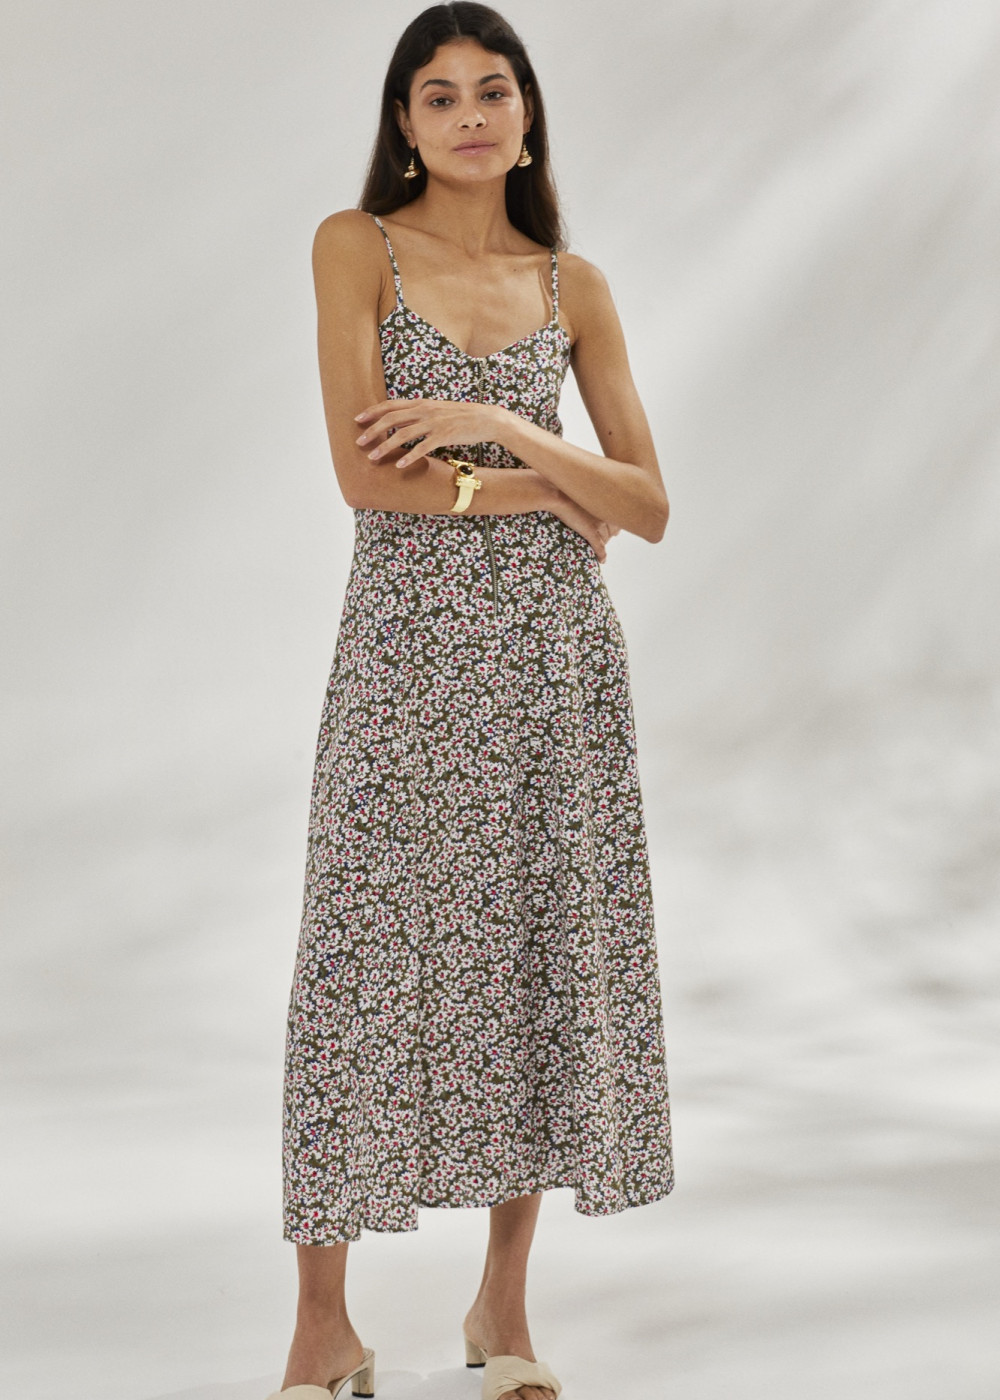 Floral Patterned Linen Dress